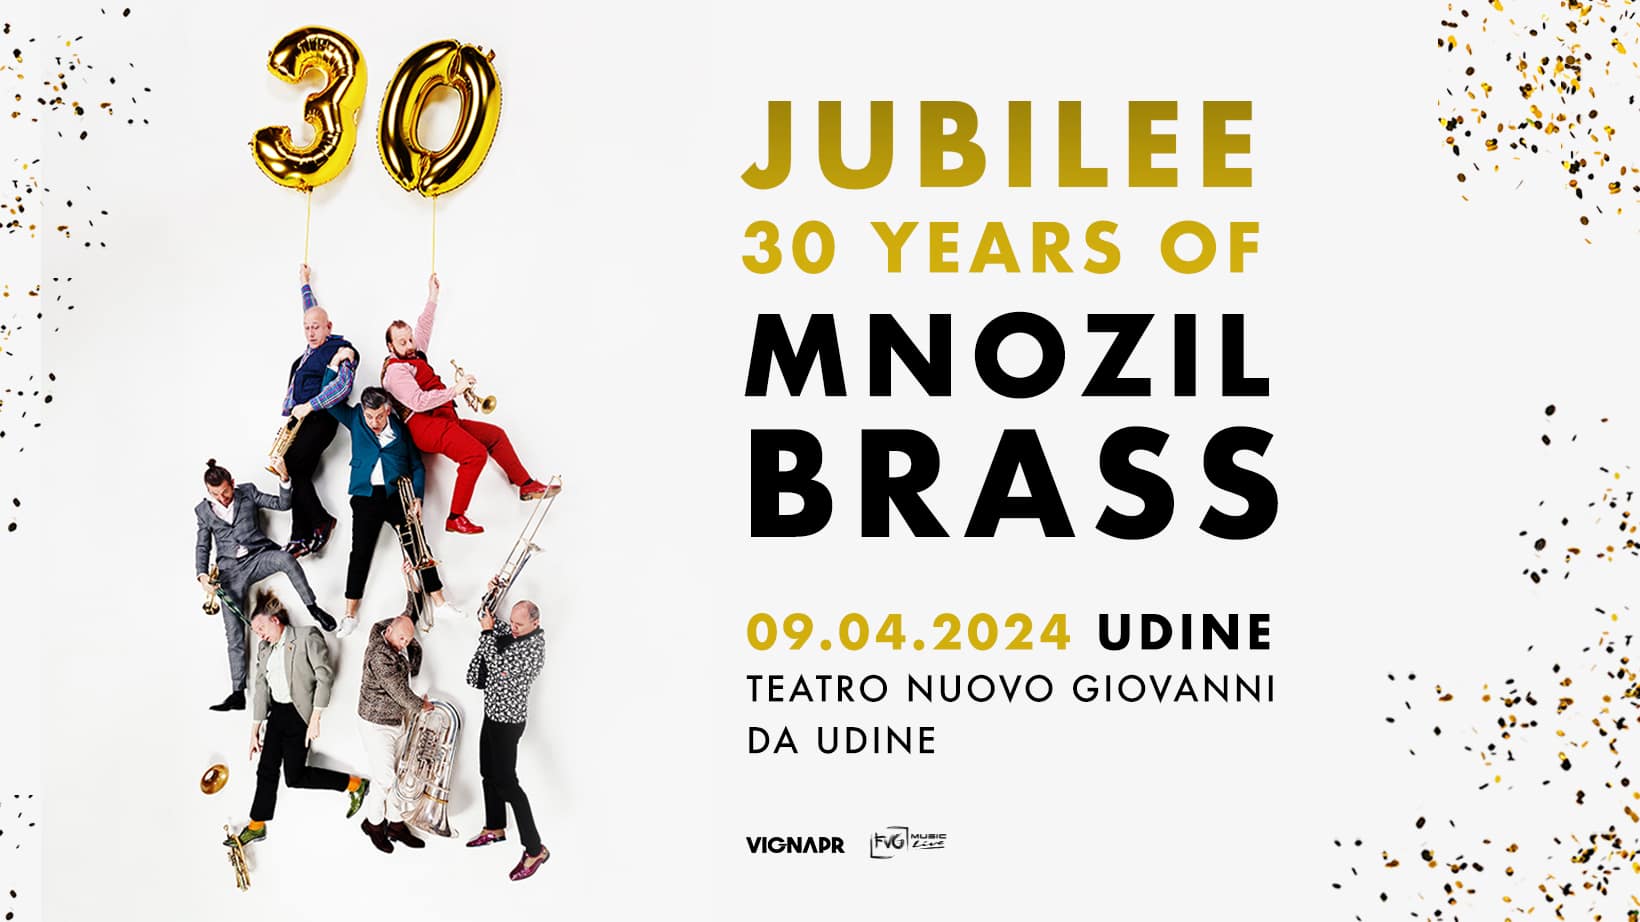 MNOZIL BRASS a Udine - il 9 aprile al Teatro Nuovo Giovanni da Udine si festeggiano i 30 anni di attività e successi della Brass Band più famosa al mondo